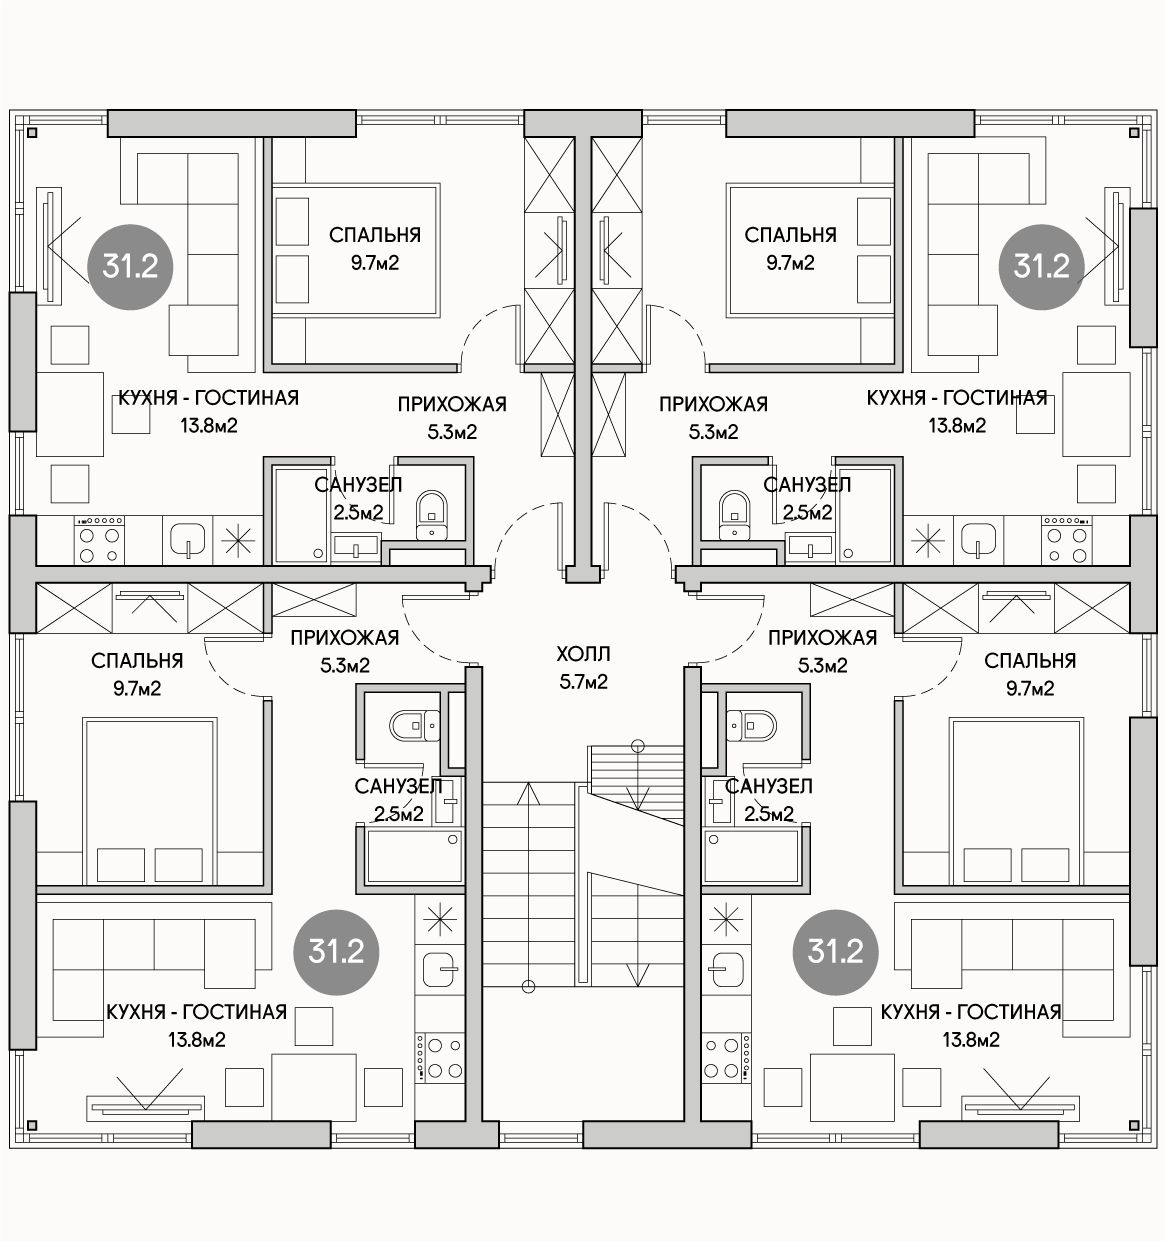 Планирока 3-го этажа в проекте Доходный дом на 16 квартир под сдачу MK-516